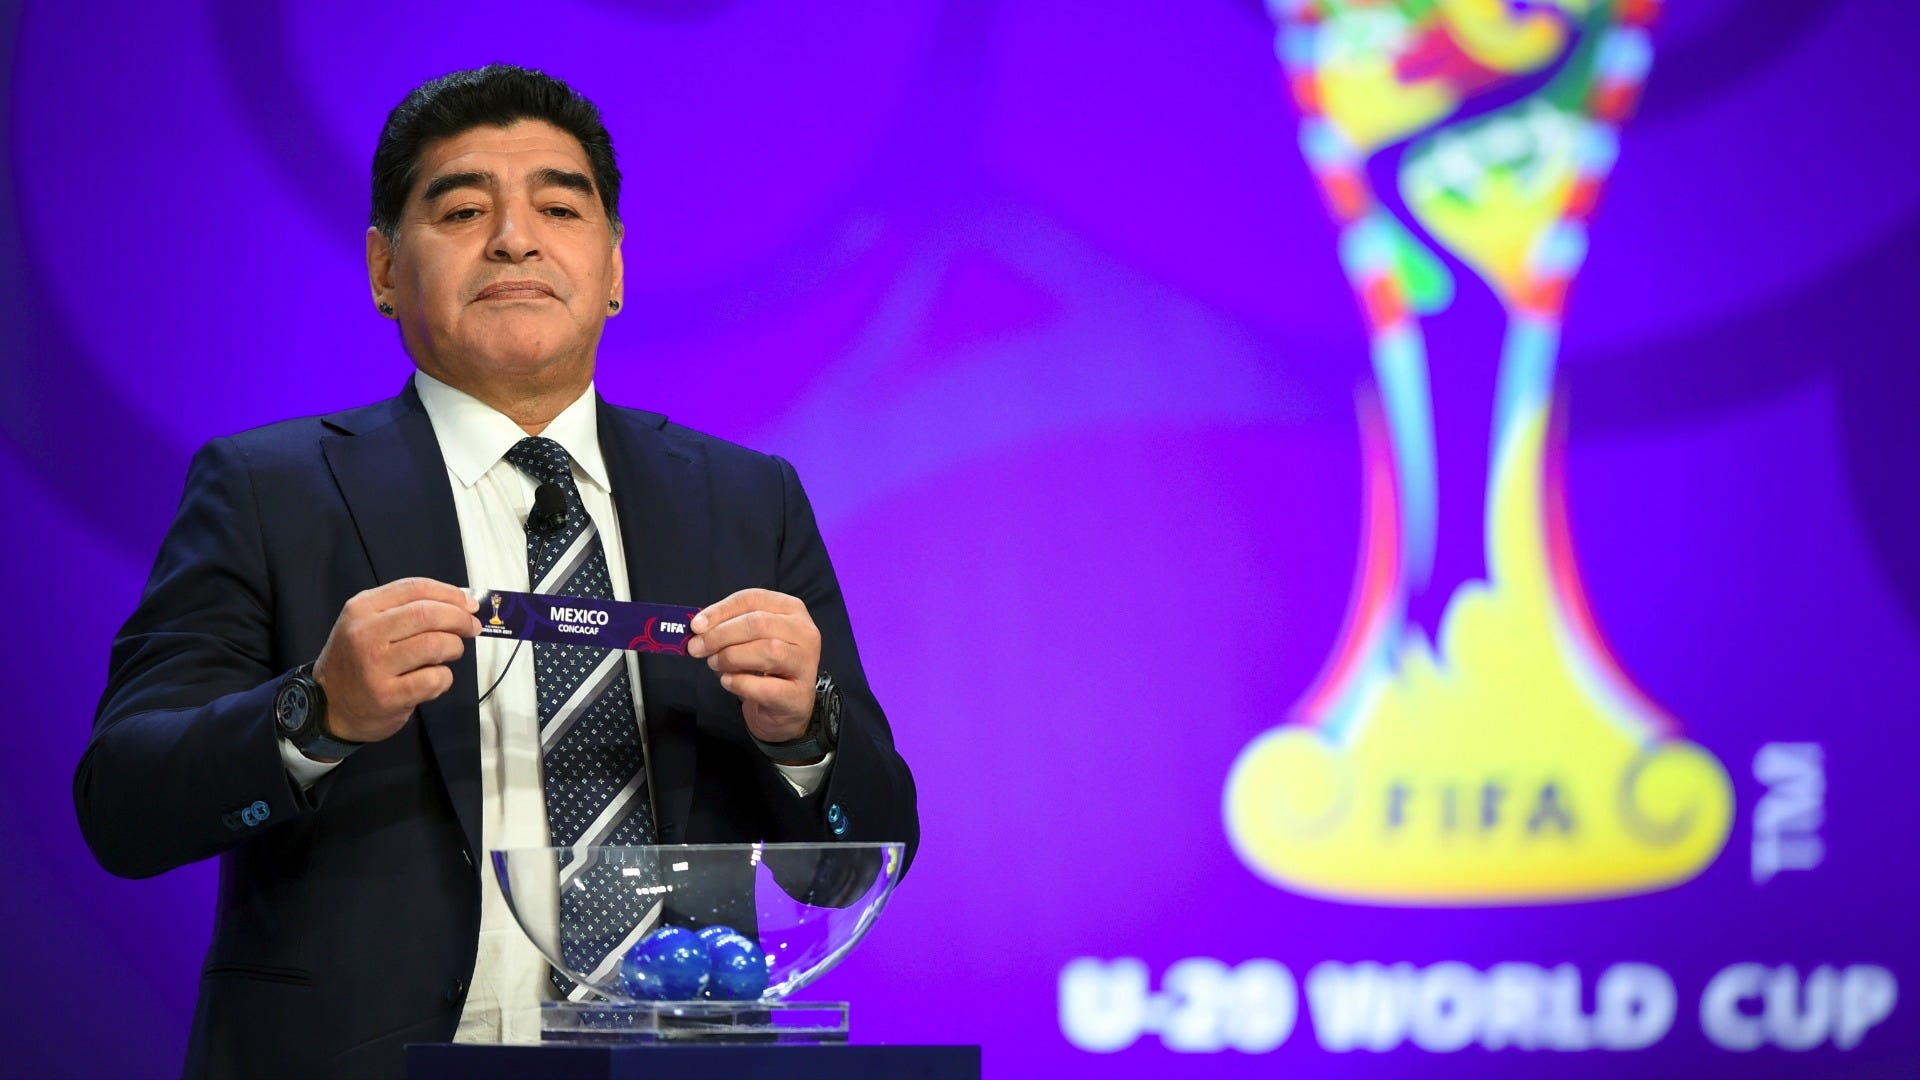 Maradona: Maradona - một nhân vật vĩ đại của thế giới bóng đá. Hãy xem bức ảnh này để tôn vinh vị chiến thắng của anh ấy trong suốt sự nghiệp đáng nhớ của mình. Những khoảnh khắc xúc động và đầy nghĩa của anh ấy sẽ gợi lên những cảm xúc mạnh mẽ bên trong bạn.